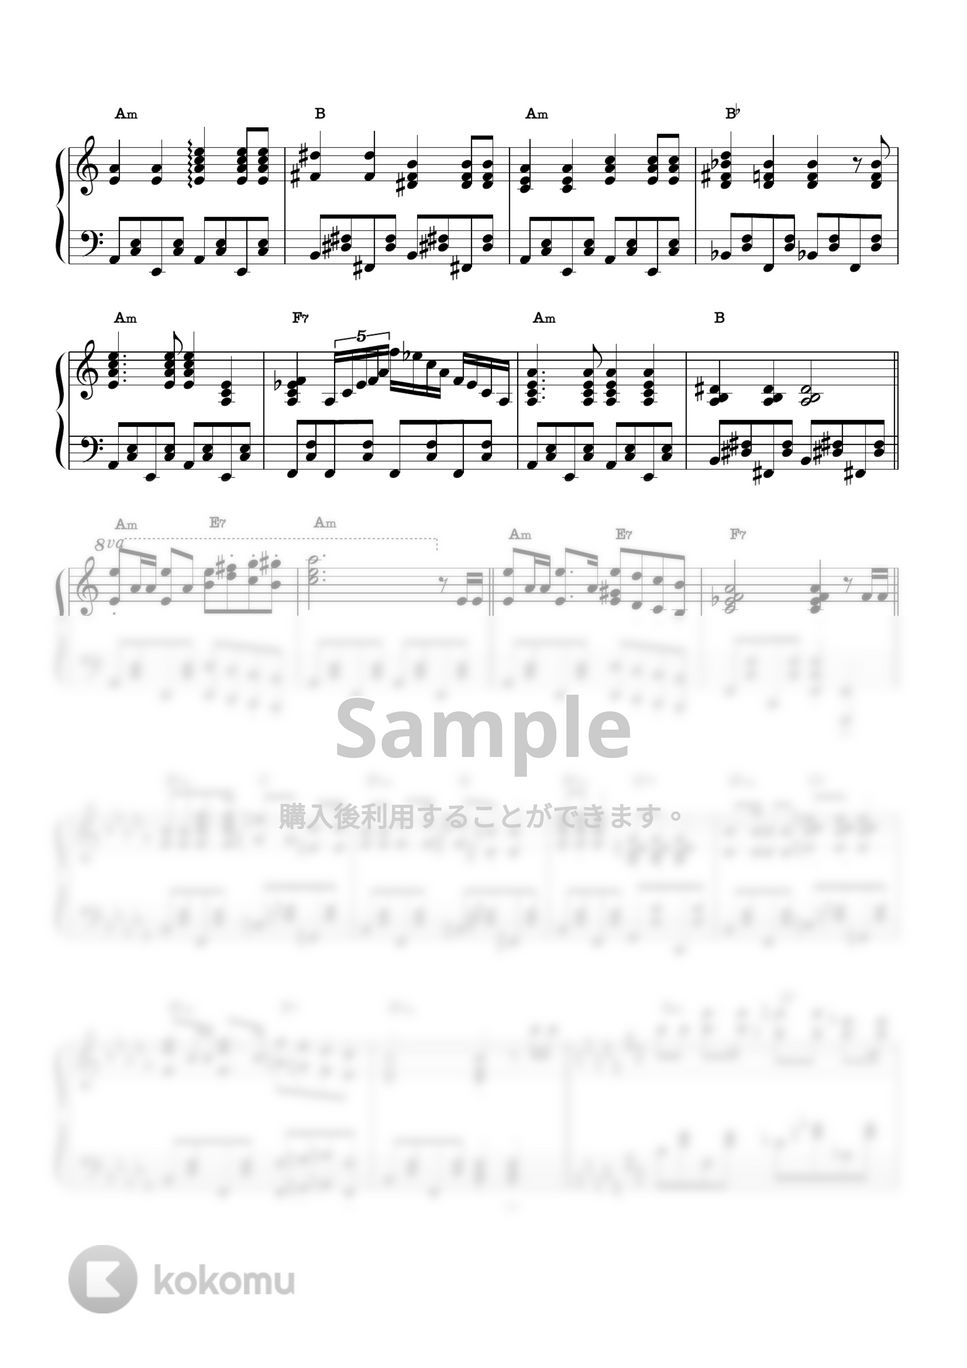 ベティーテイラー - グリムグリニングゴースト (ピアノソロ / ディズニー / コード有 / Dハロ) by CAFUNE かふね